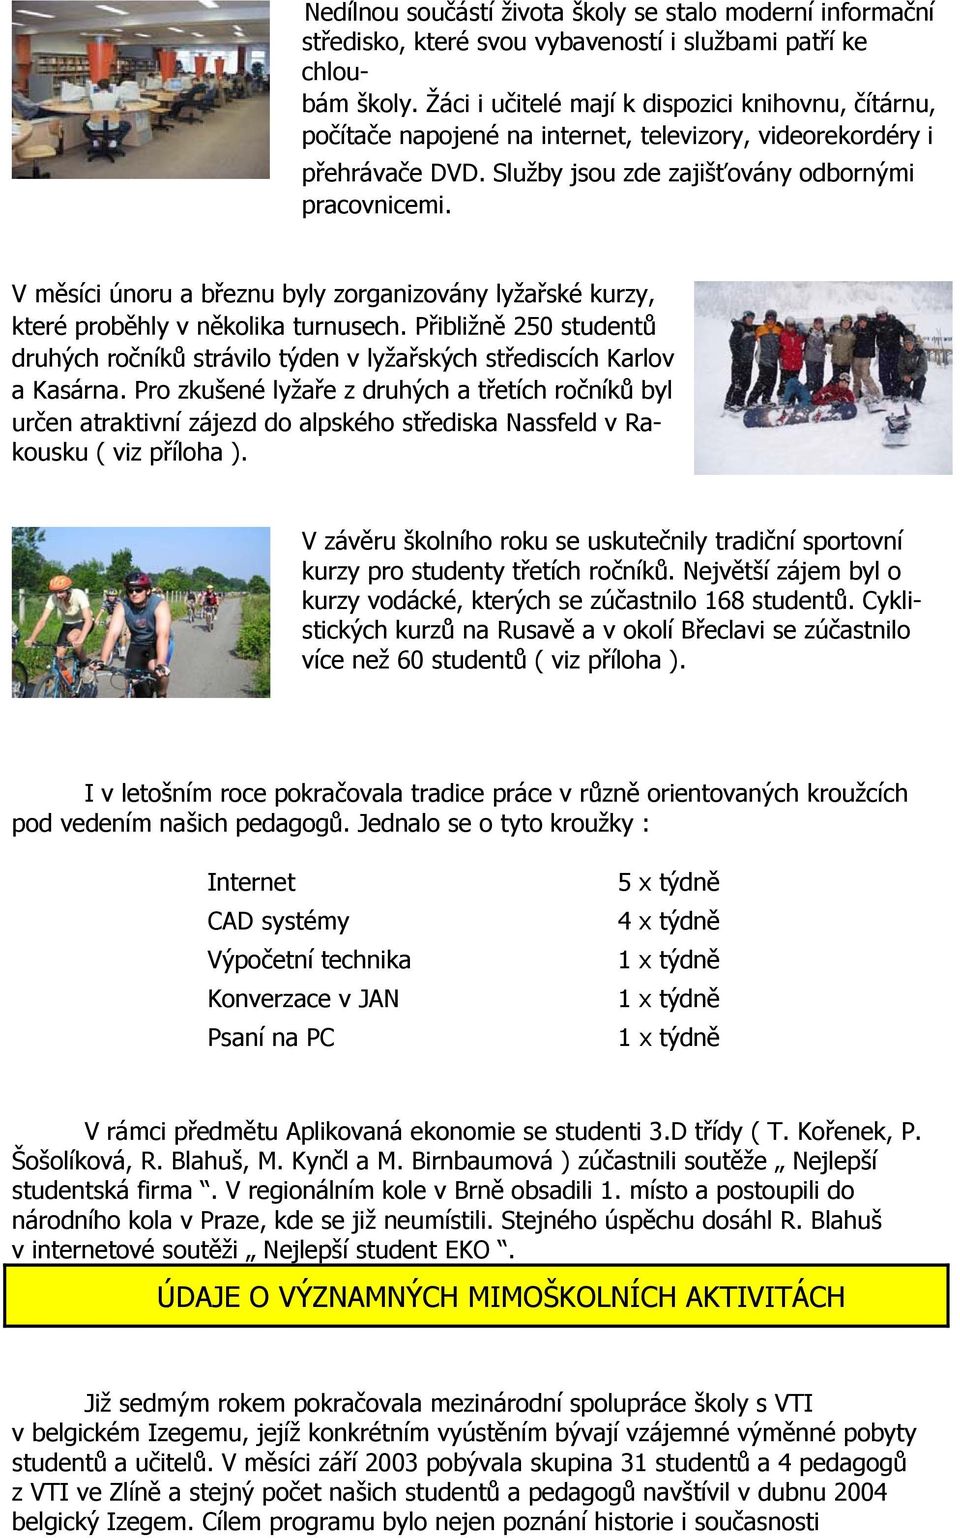 V měsíci únoru a březnu byly zorganizovány lyžařské kurzy, které proběhly v několika turnusech. Přibližně 250 studentů druhých ročníků strávilo týden v lyžařských střediscích Karlov a Kasárna.